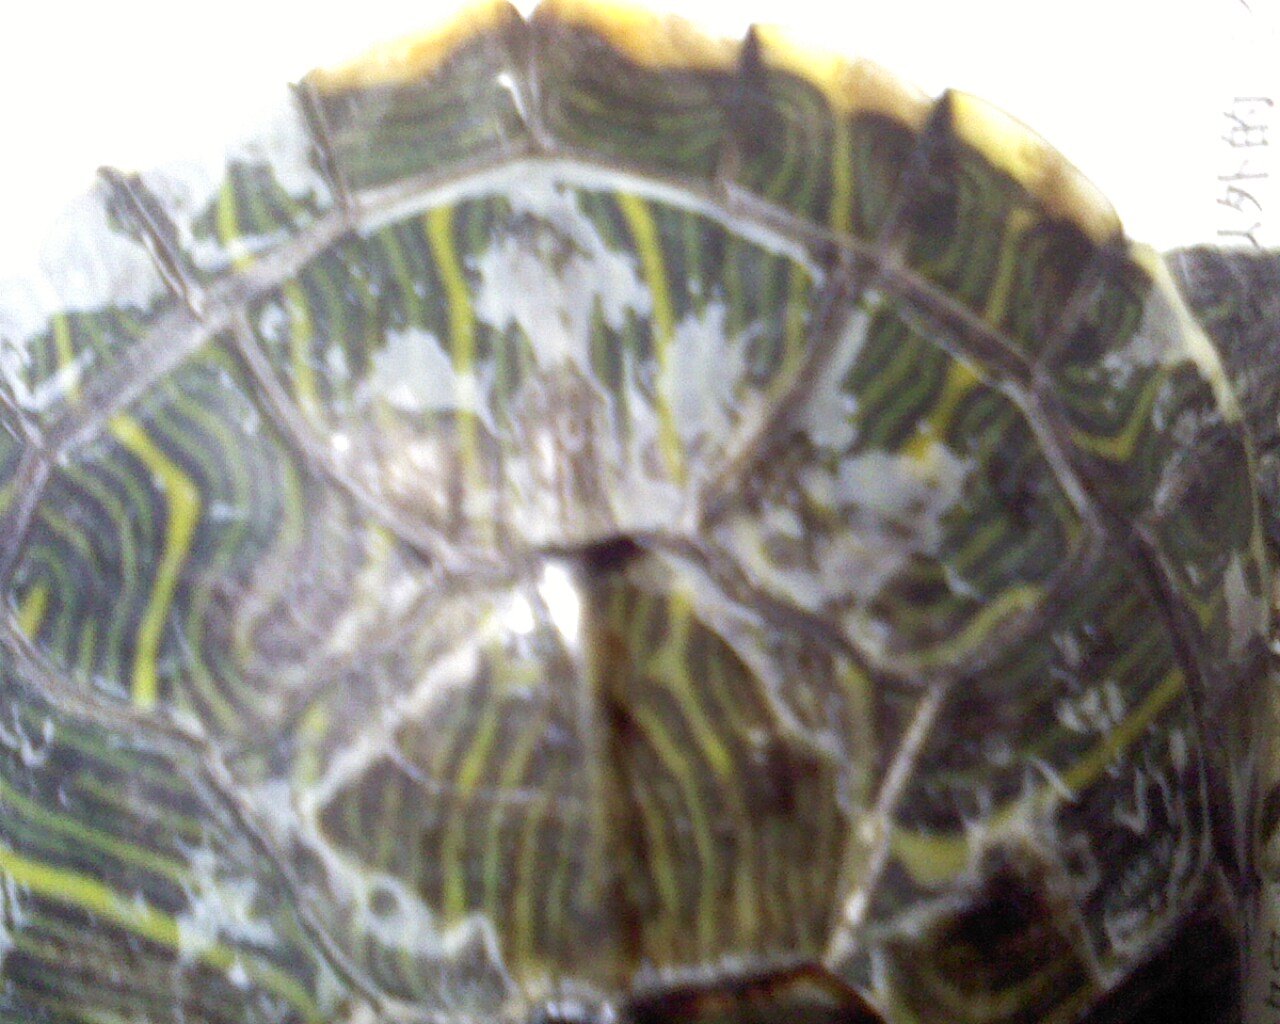 小巴西红耳龟图片高清原图下载,小巴西红耳龟图片,高清图片,壁纸 - 天下桌面